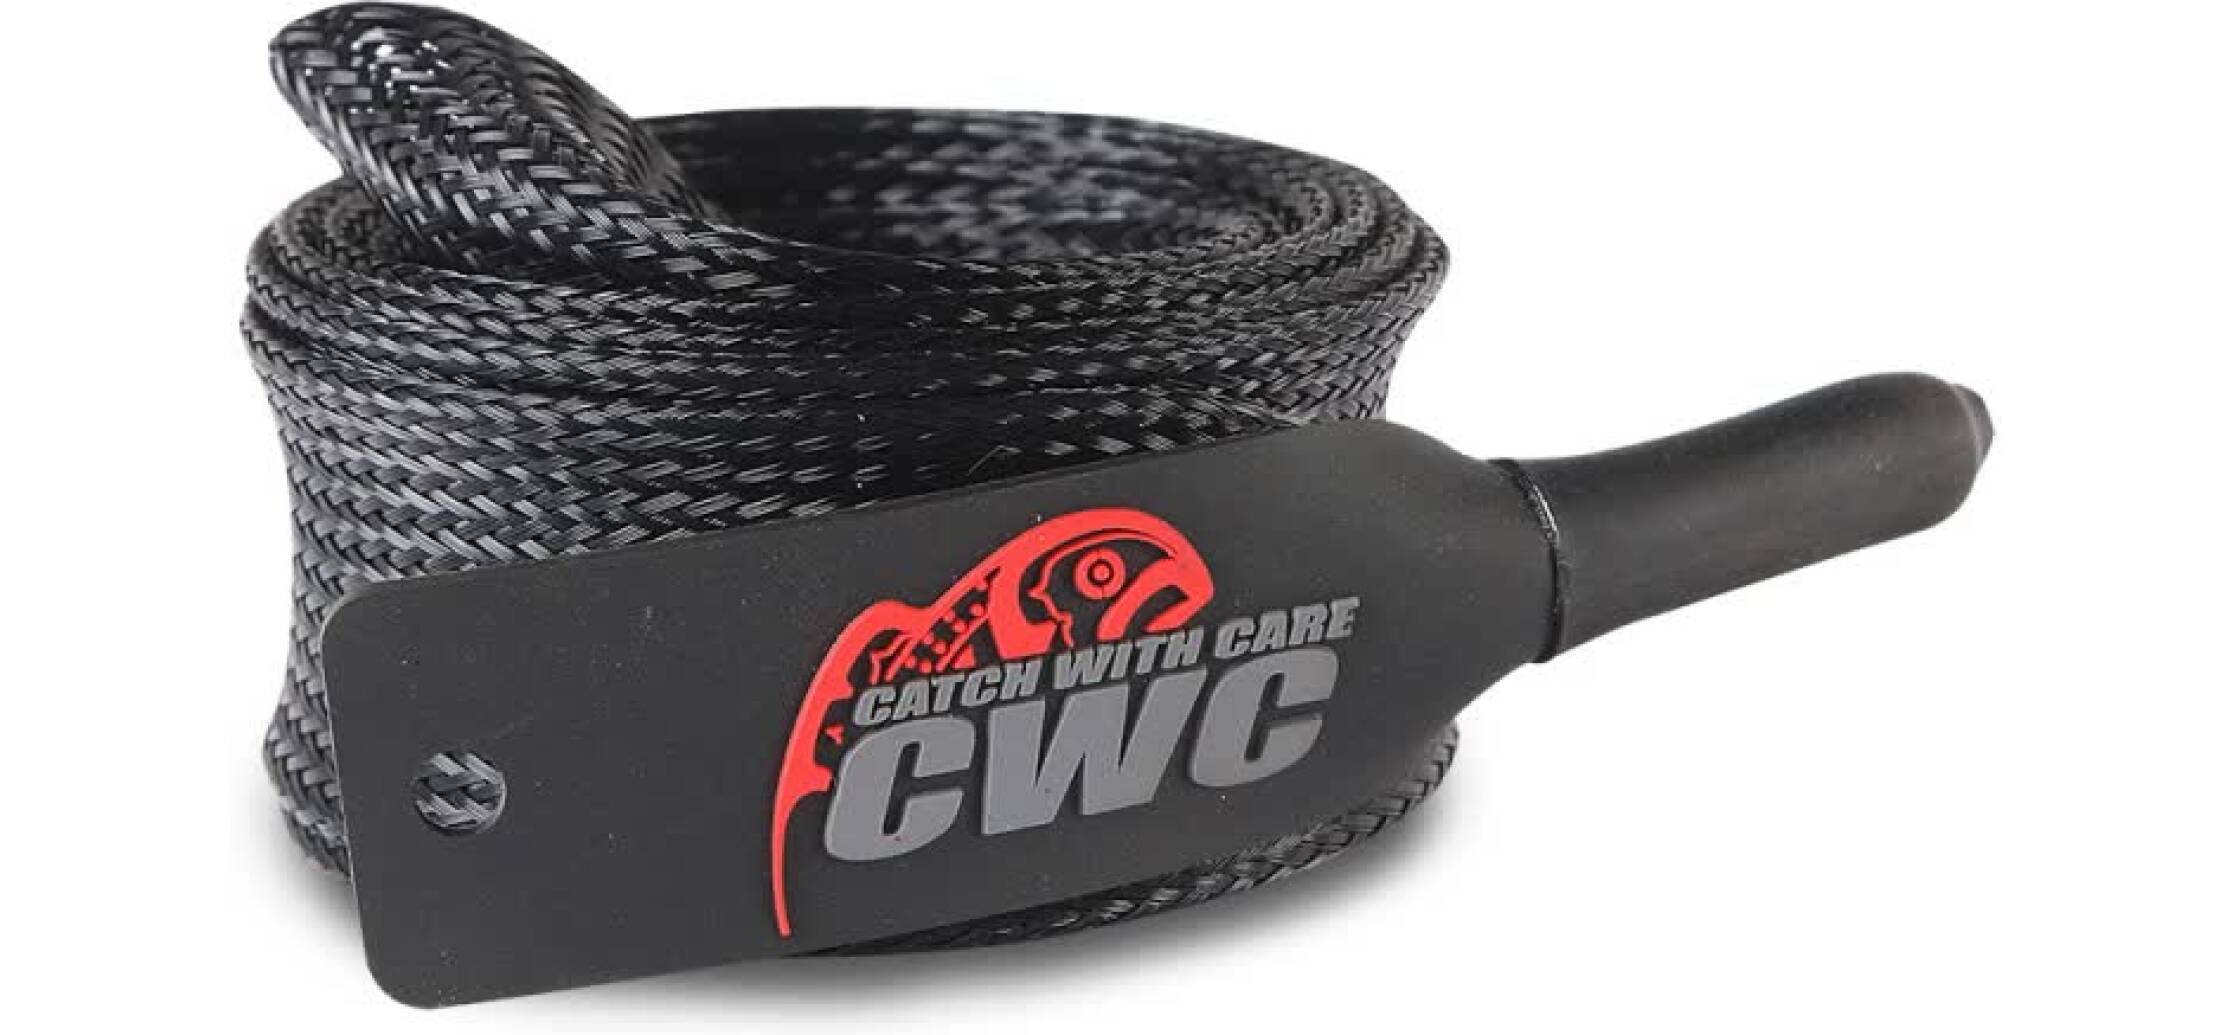 CWC Rod cover kommer i tre olika versioner.